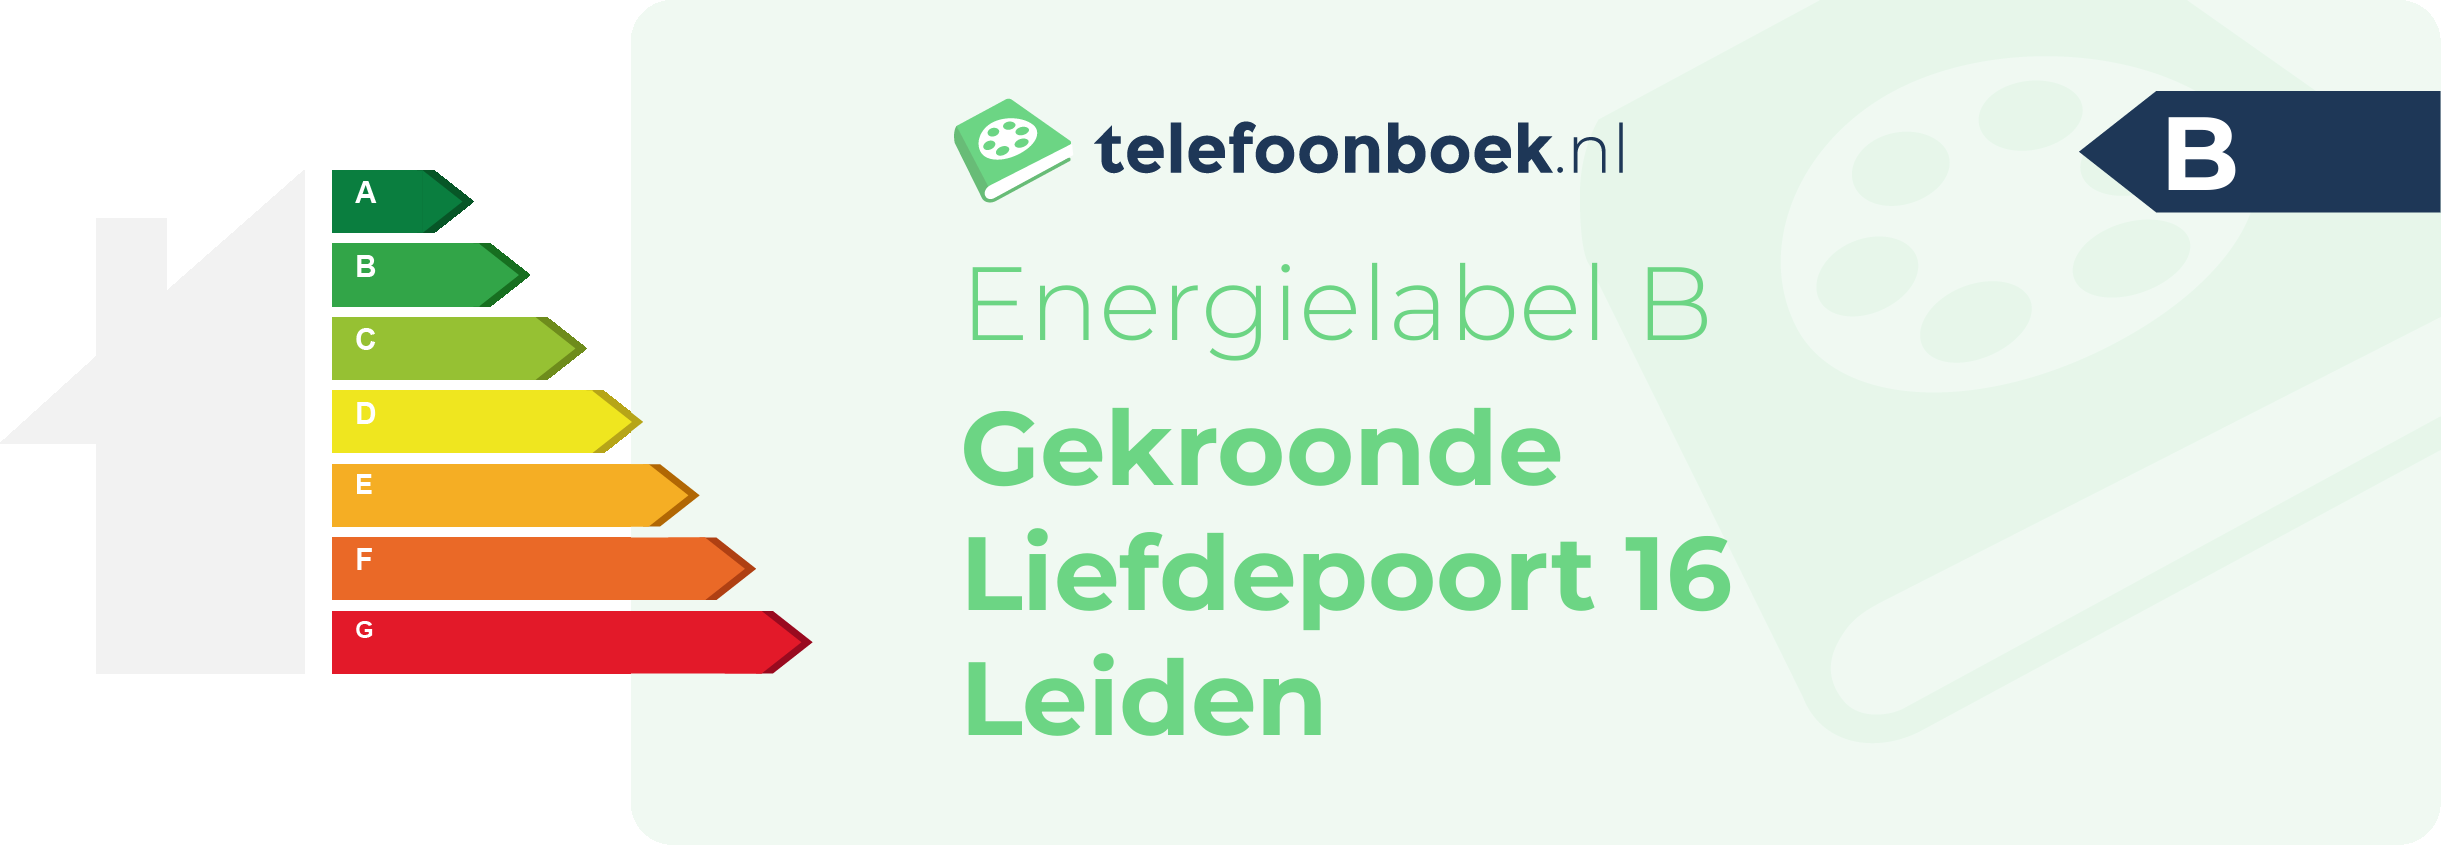 Energielabel Gekroonde Liefdepoort 16 Leiden